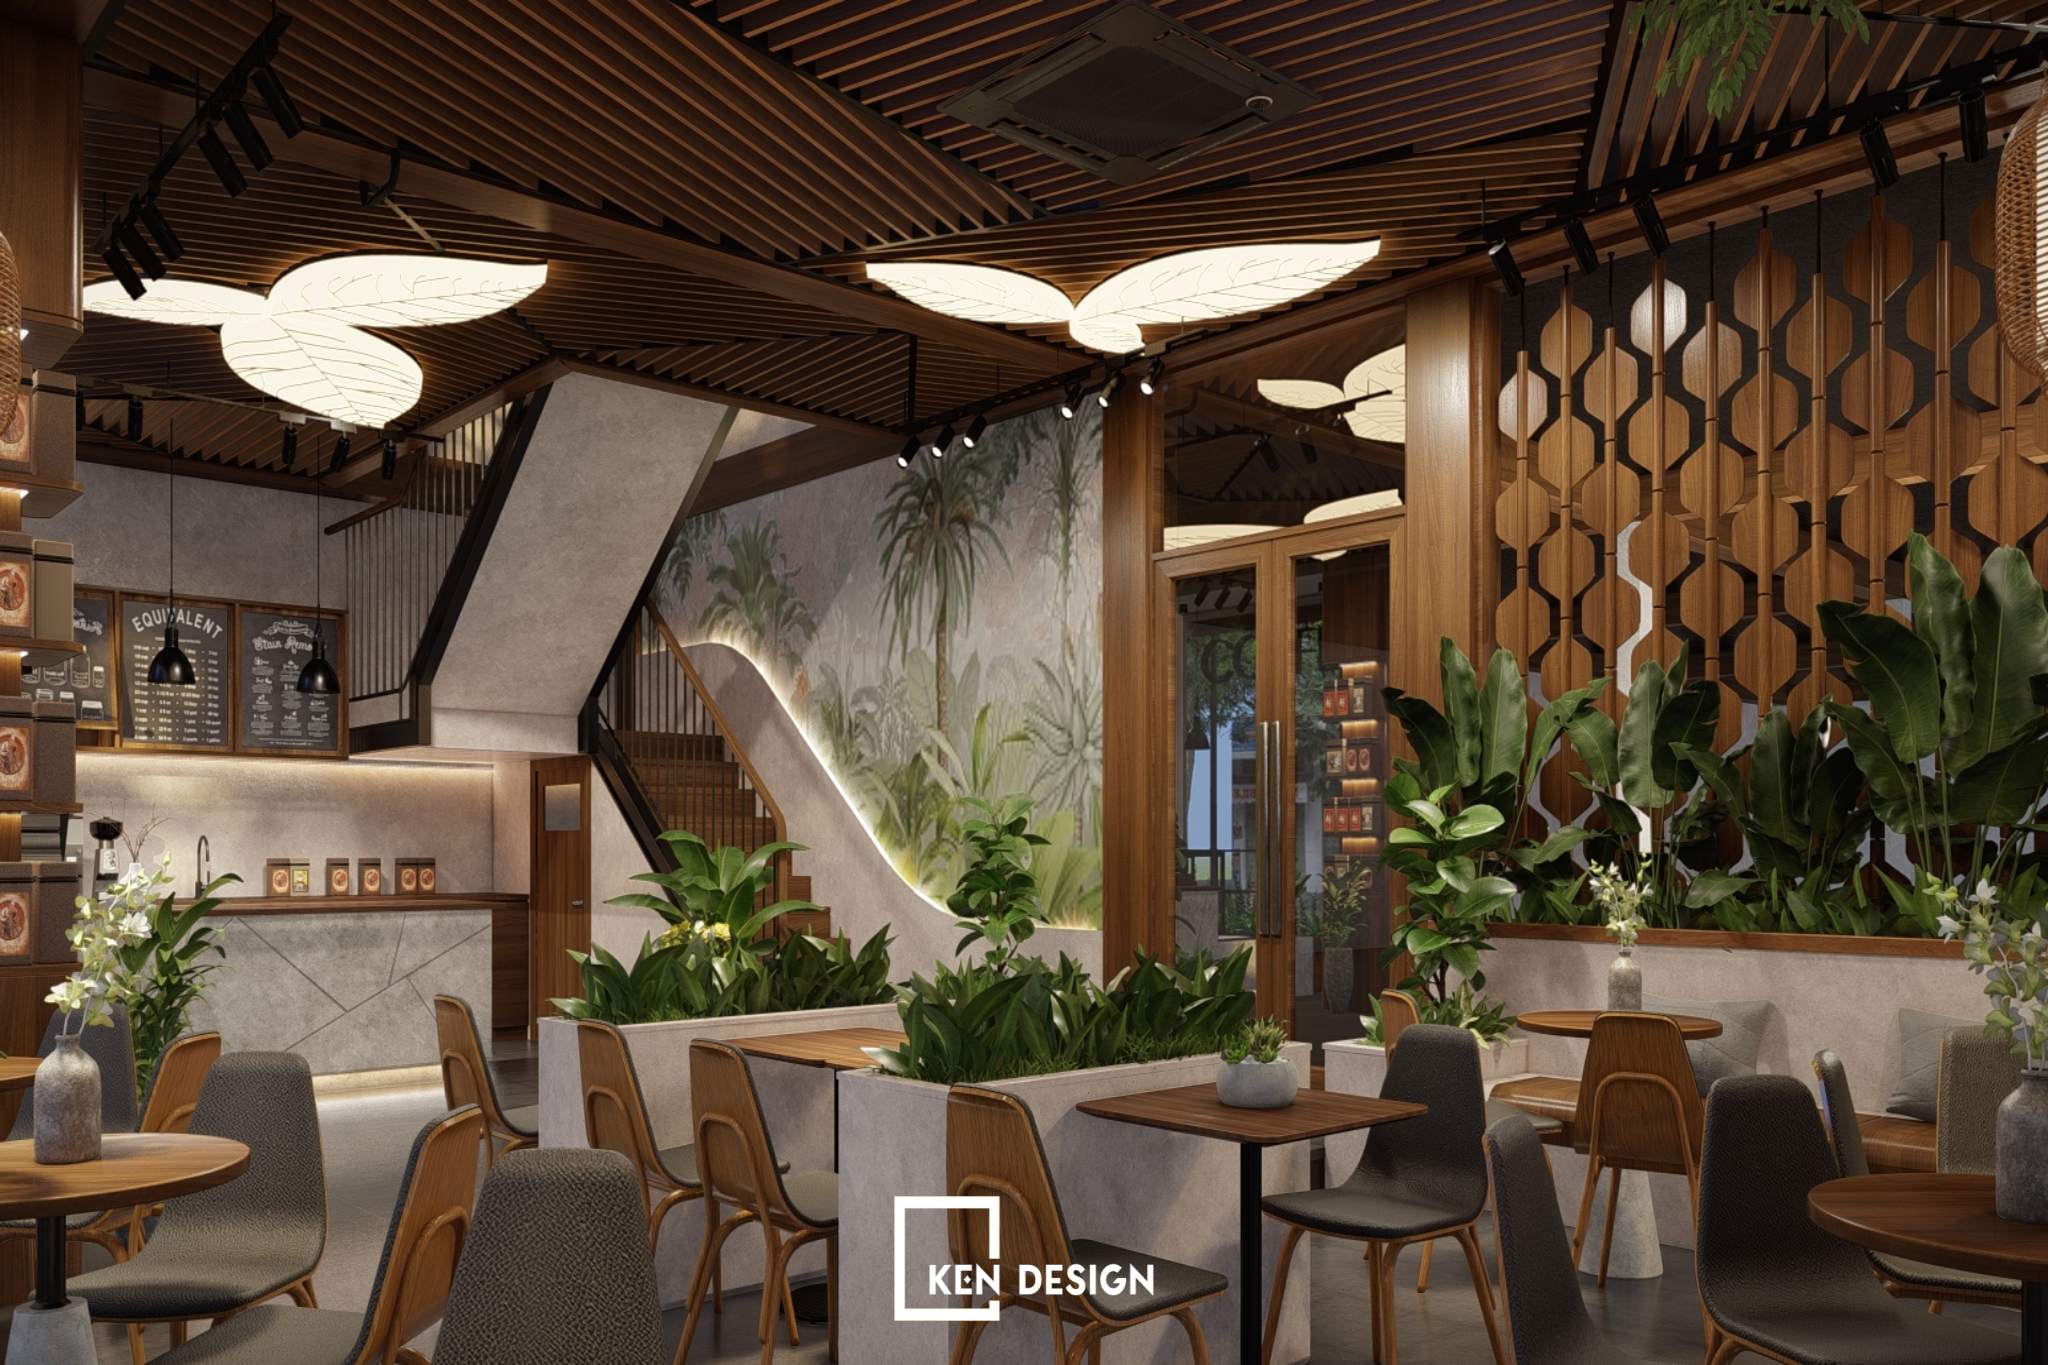 Thiết kế tổ hợp nhà hàng và cafe tại Hưng Yên